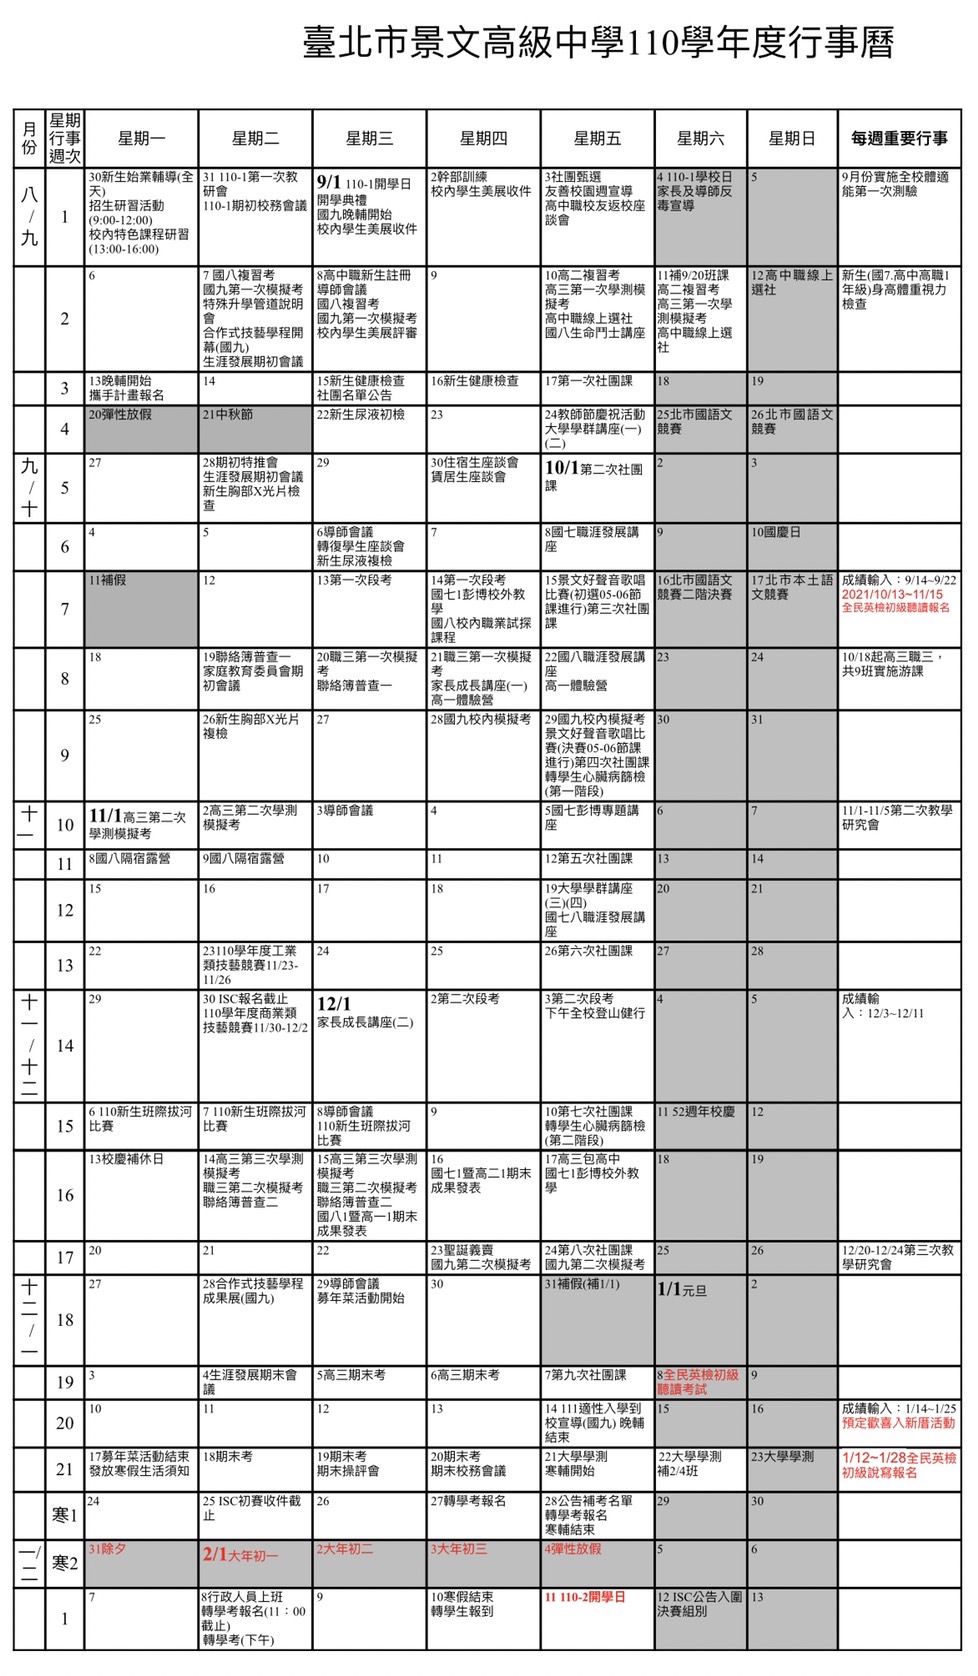 臺北市景文高級中學110學年度行事曆